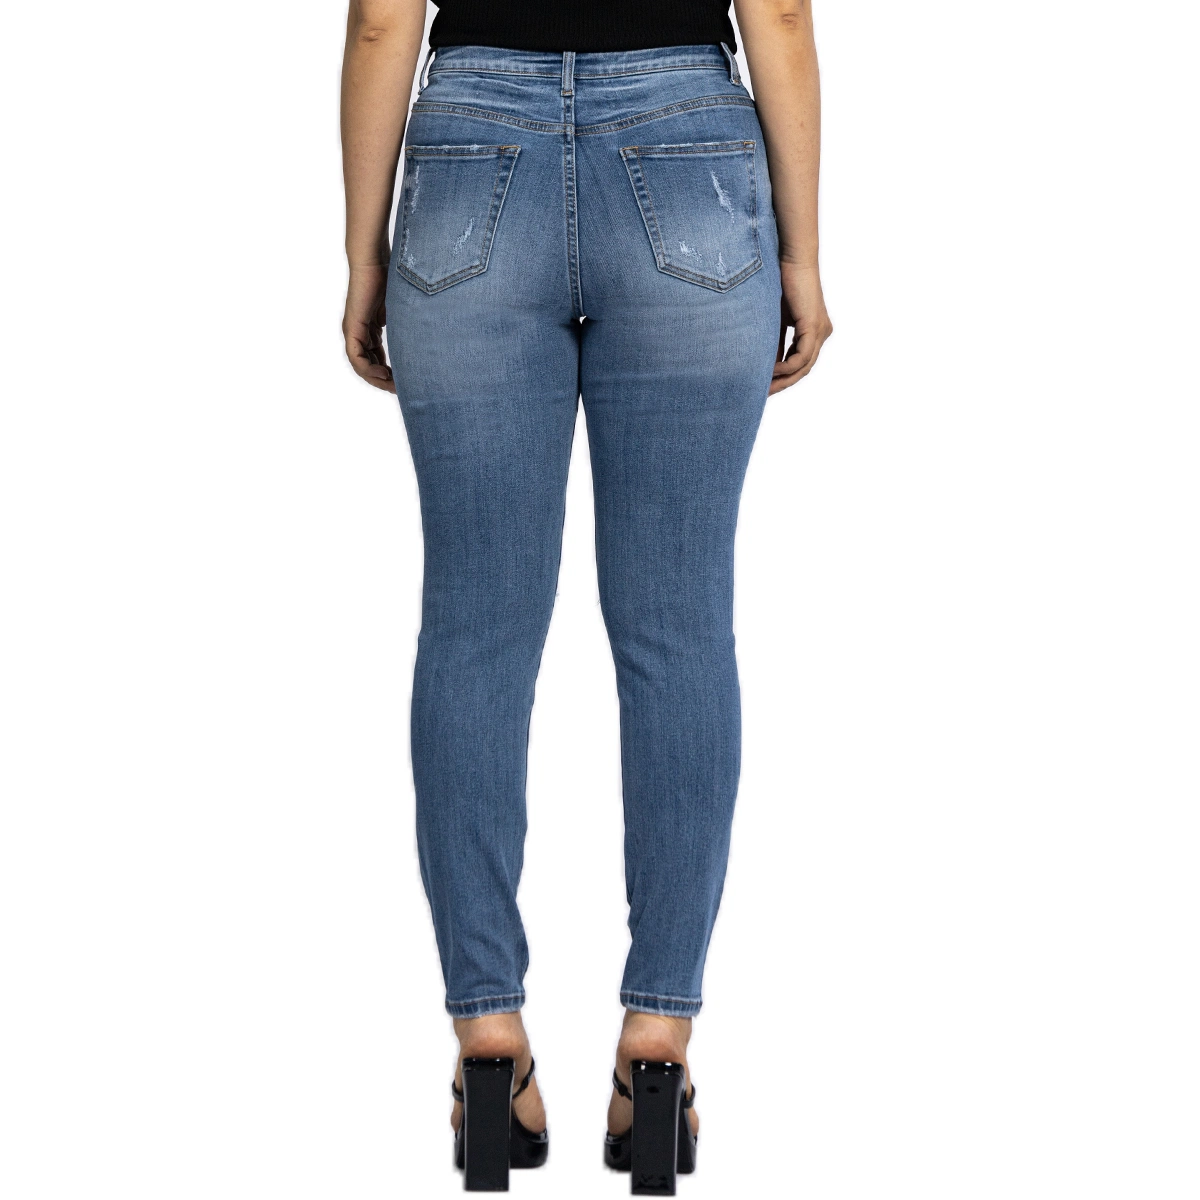 Biselado Appliqued azul Ripped jeans ajustados para la Mujer